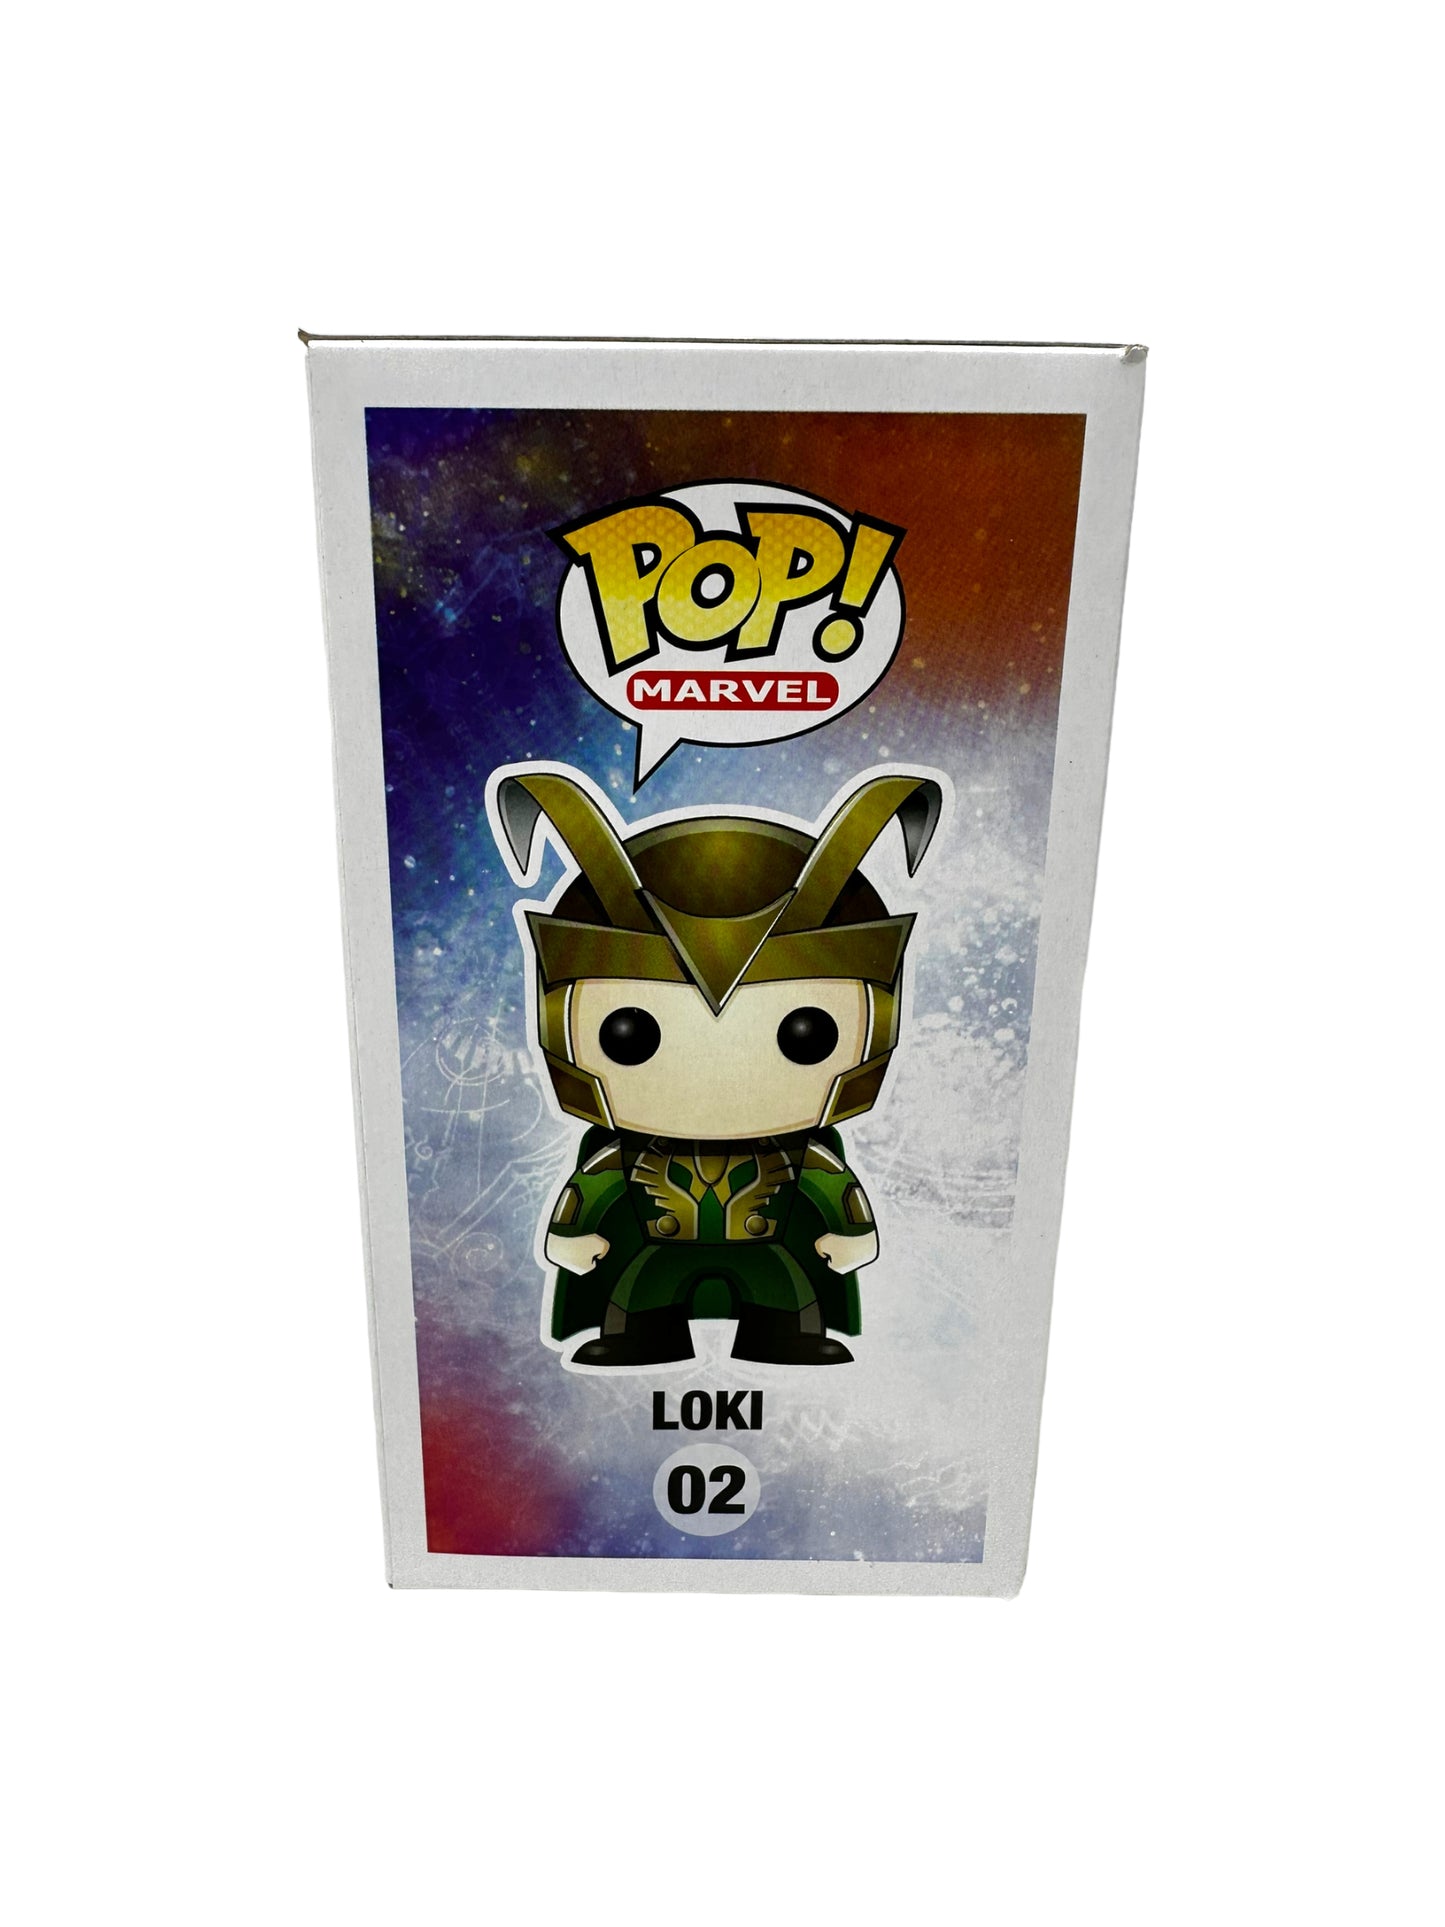 Sold 10/9 2016 Loki 02 Poplife